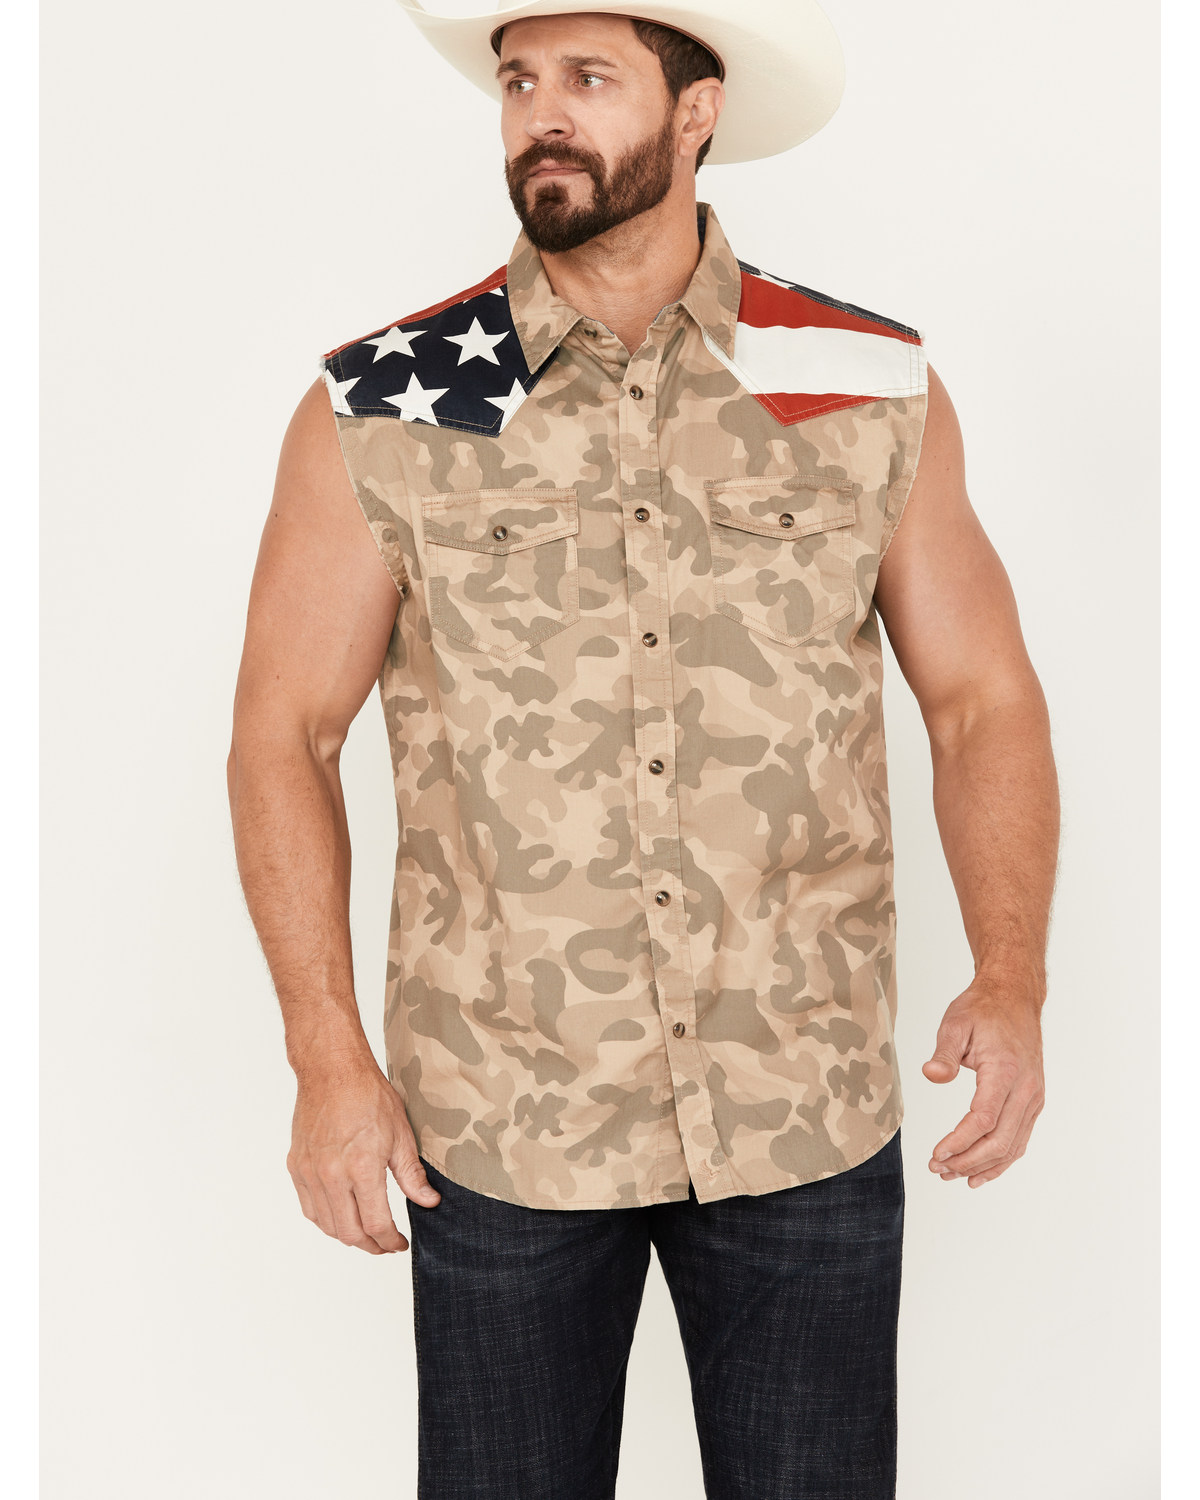 Cody James Men's Recon Desert Camo Bubba Sleeveless Snap Shirt